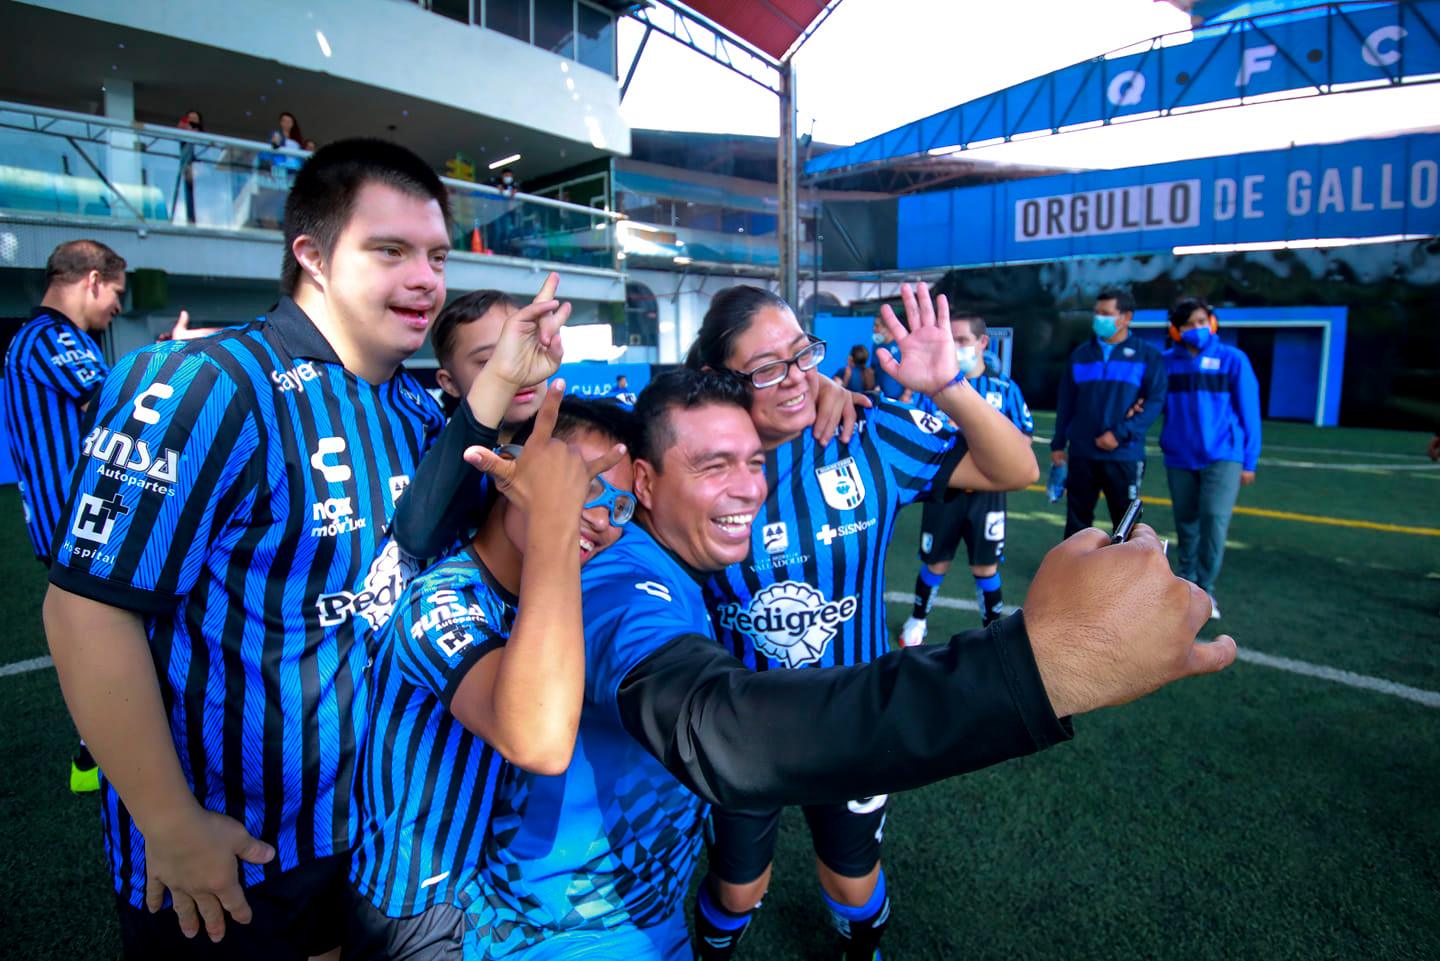 Gallos smiling, nuevo equipo de Club Querétaro